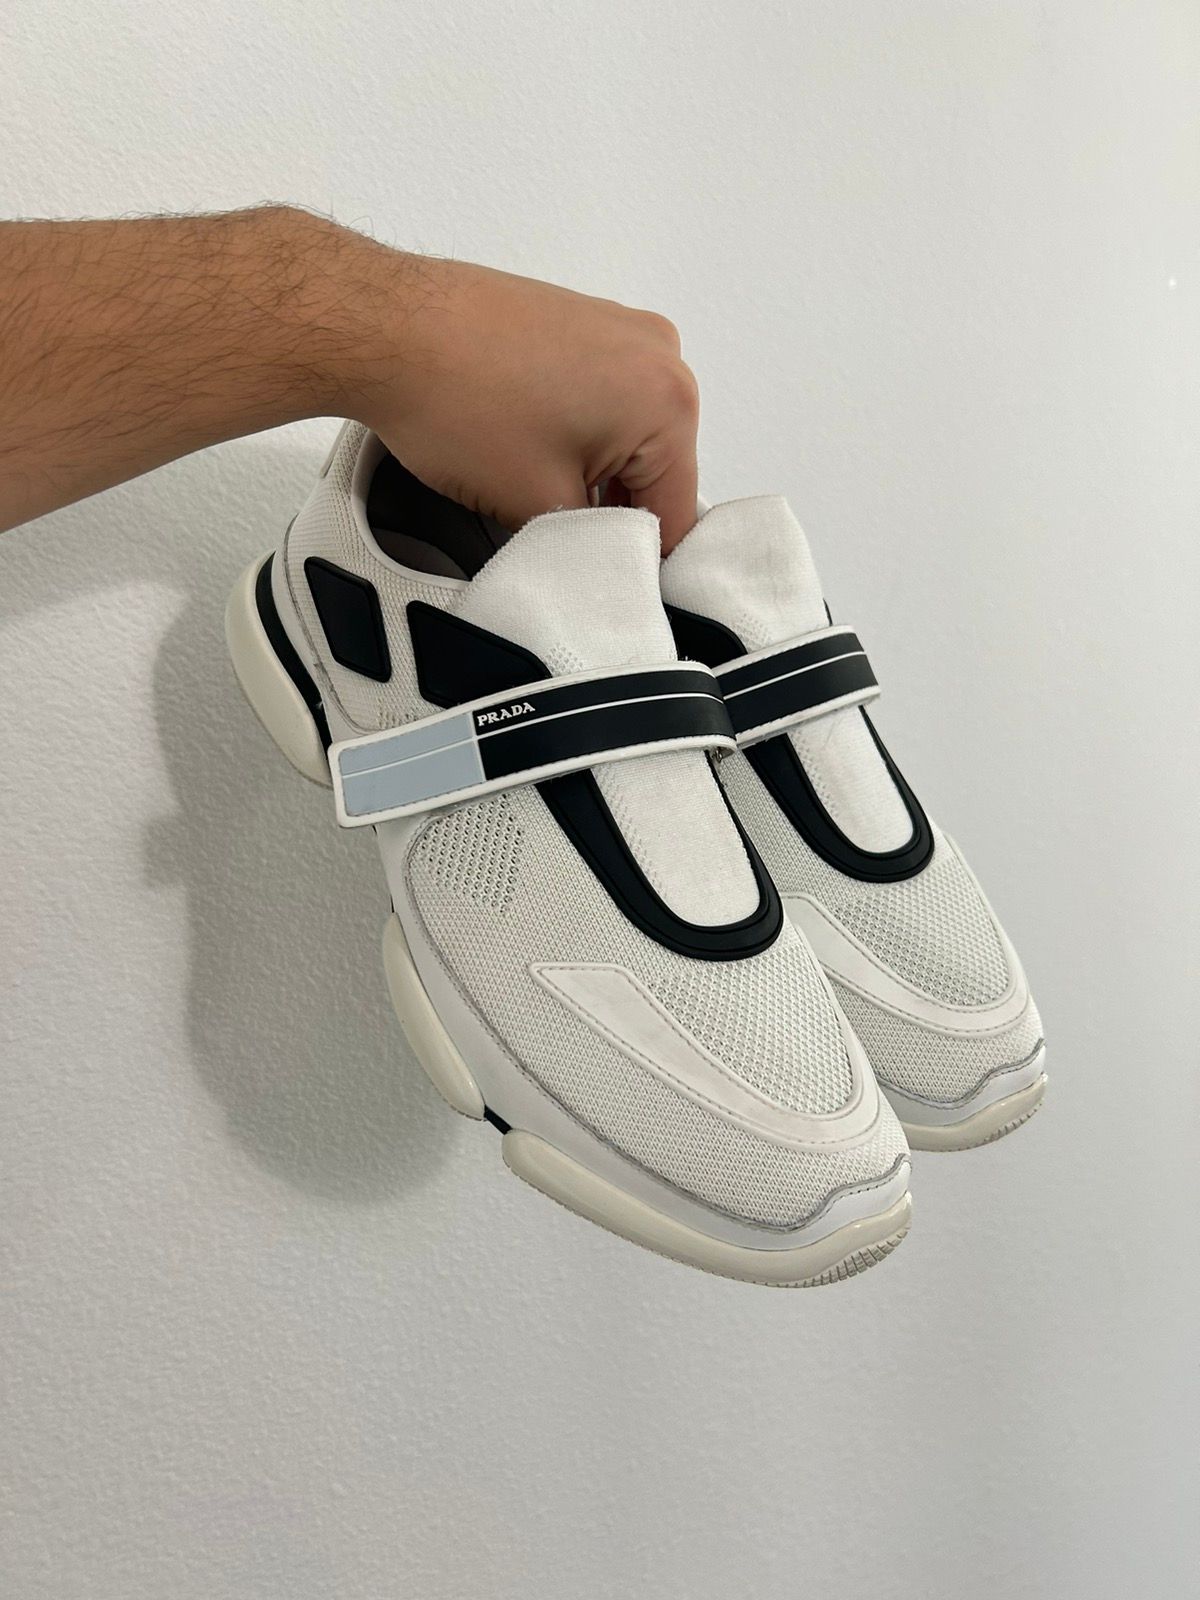 Pre-owned Prada Cloudbust Futuristic Sneaker In White